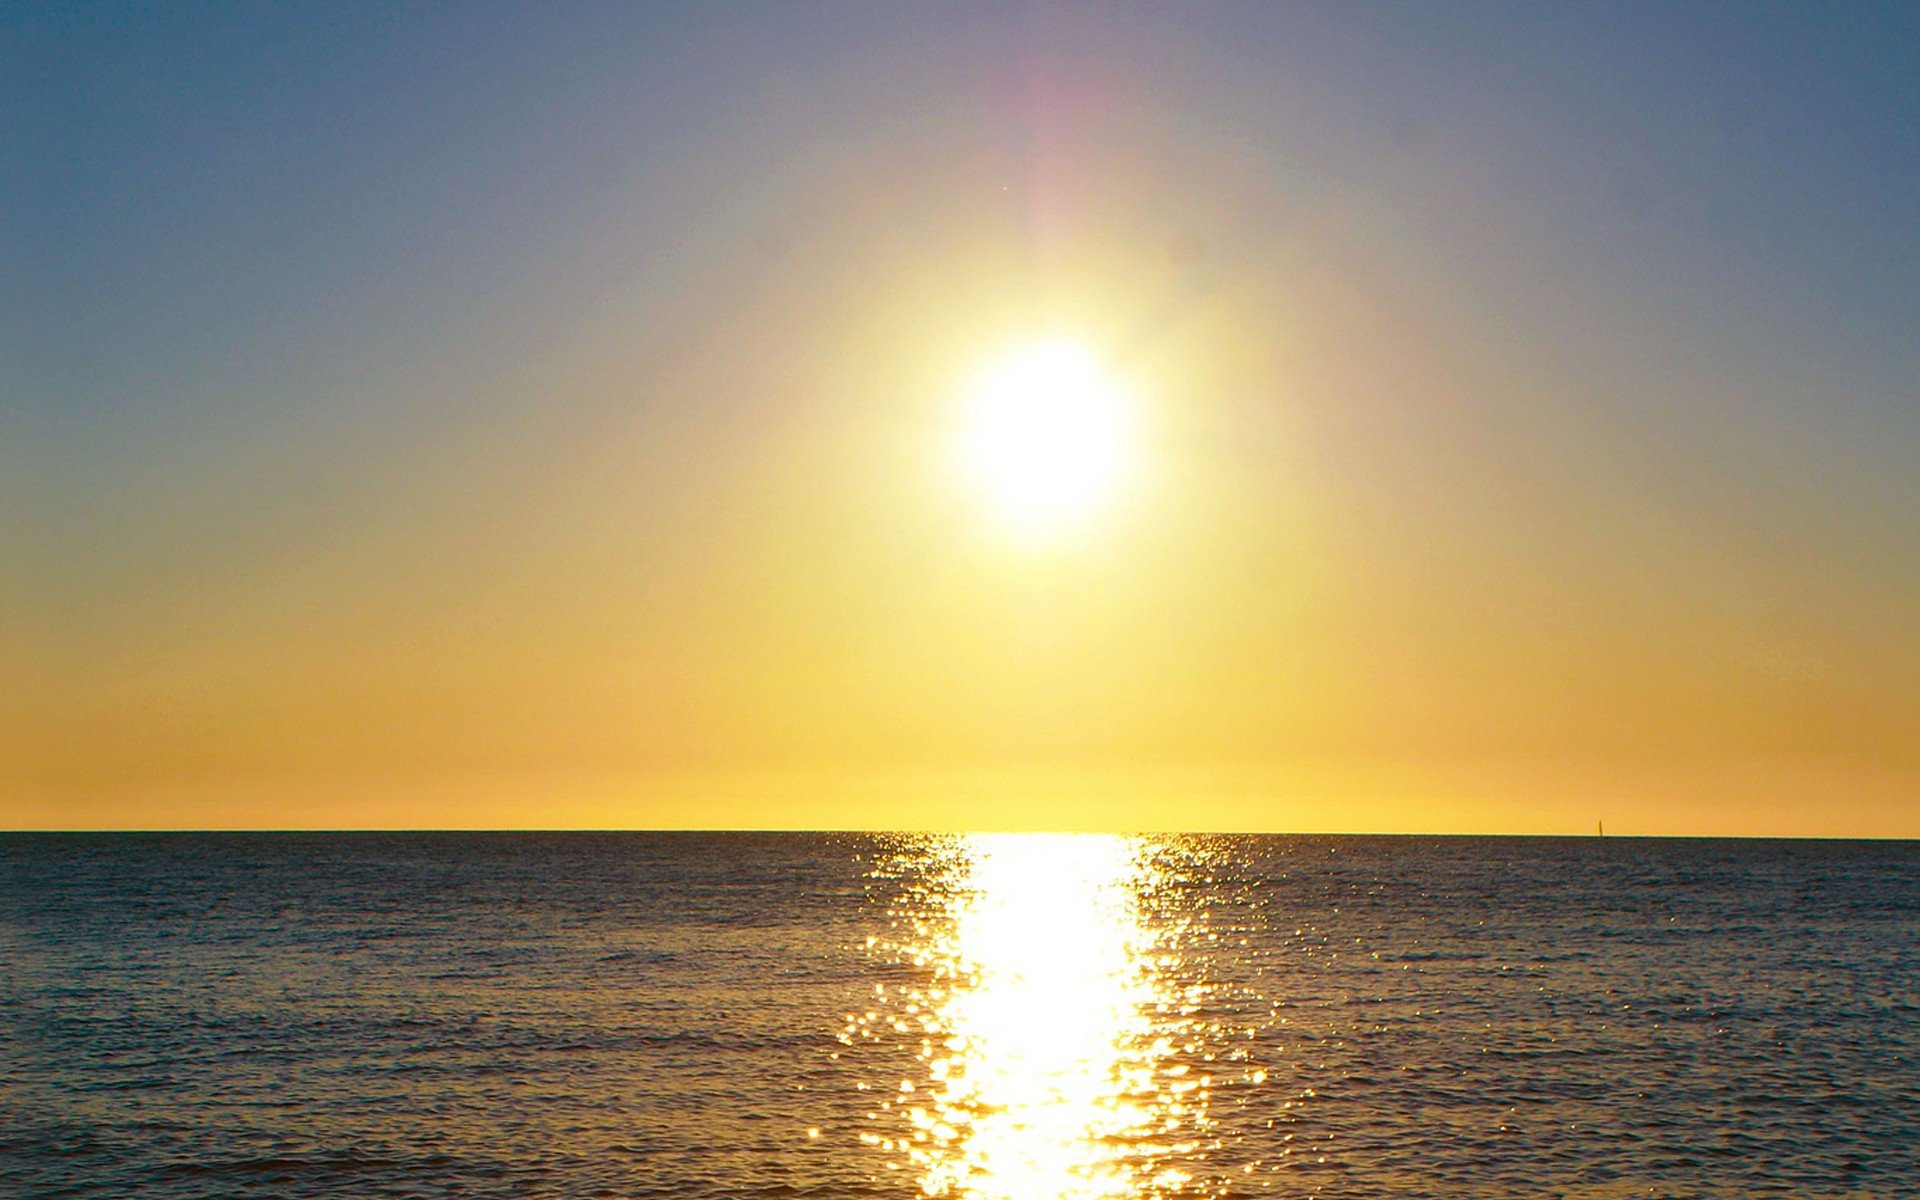 Пикник здесь под желтым солнцем ламп. Солнечный свет над морем. Закат над морем. Море солнце. Рассвет солнца.